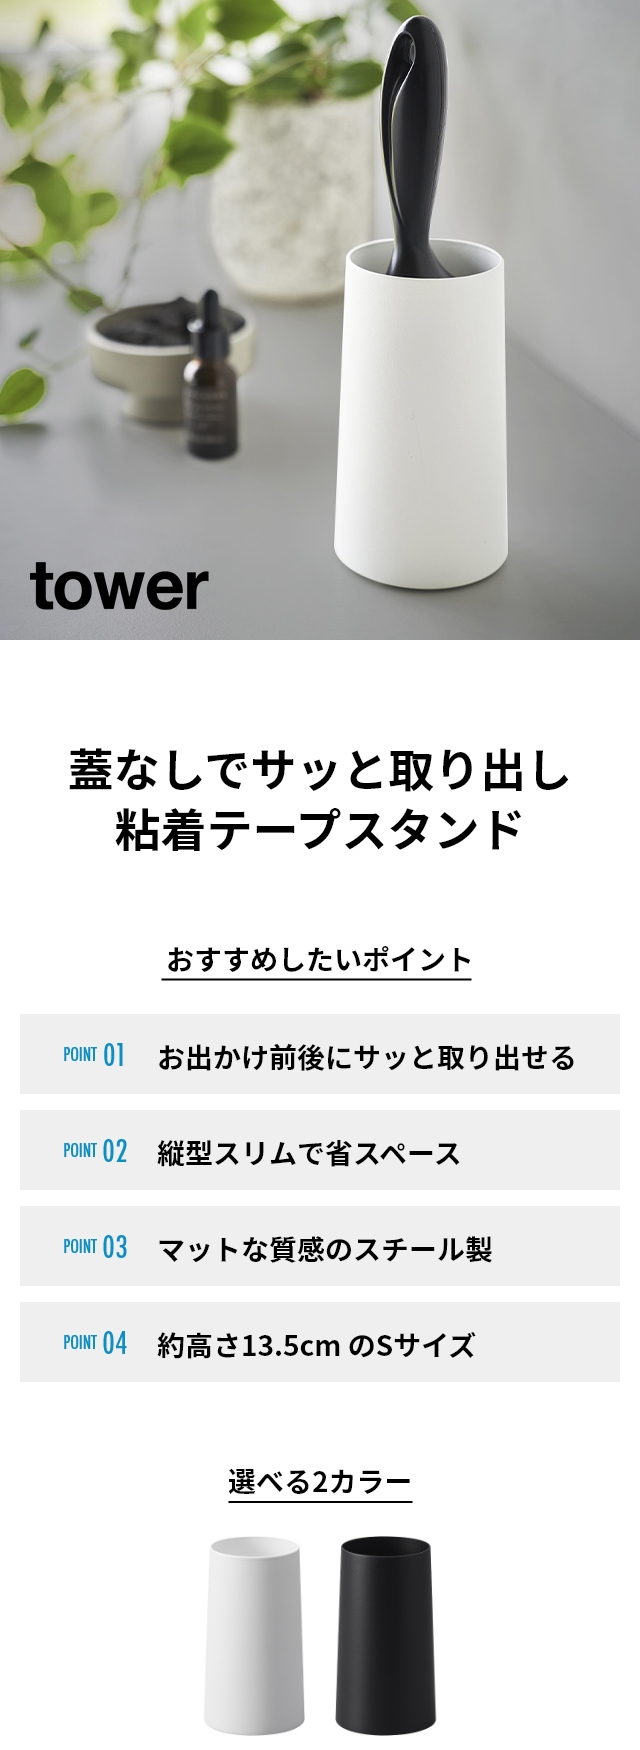 tower (タワー) 粘着クリーナースタンド S 縦型